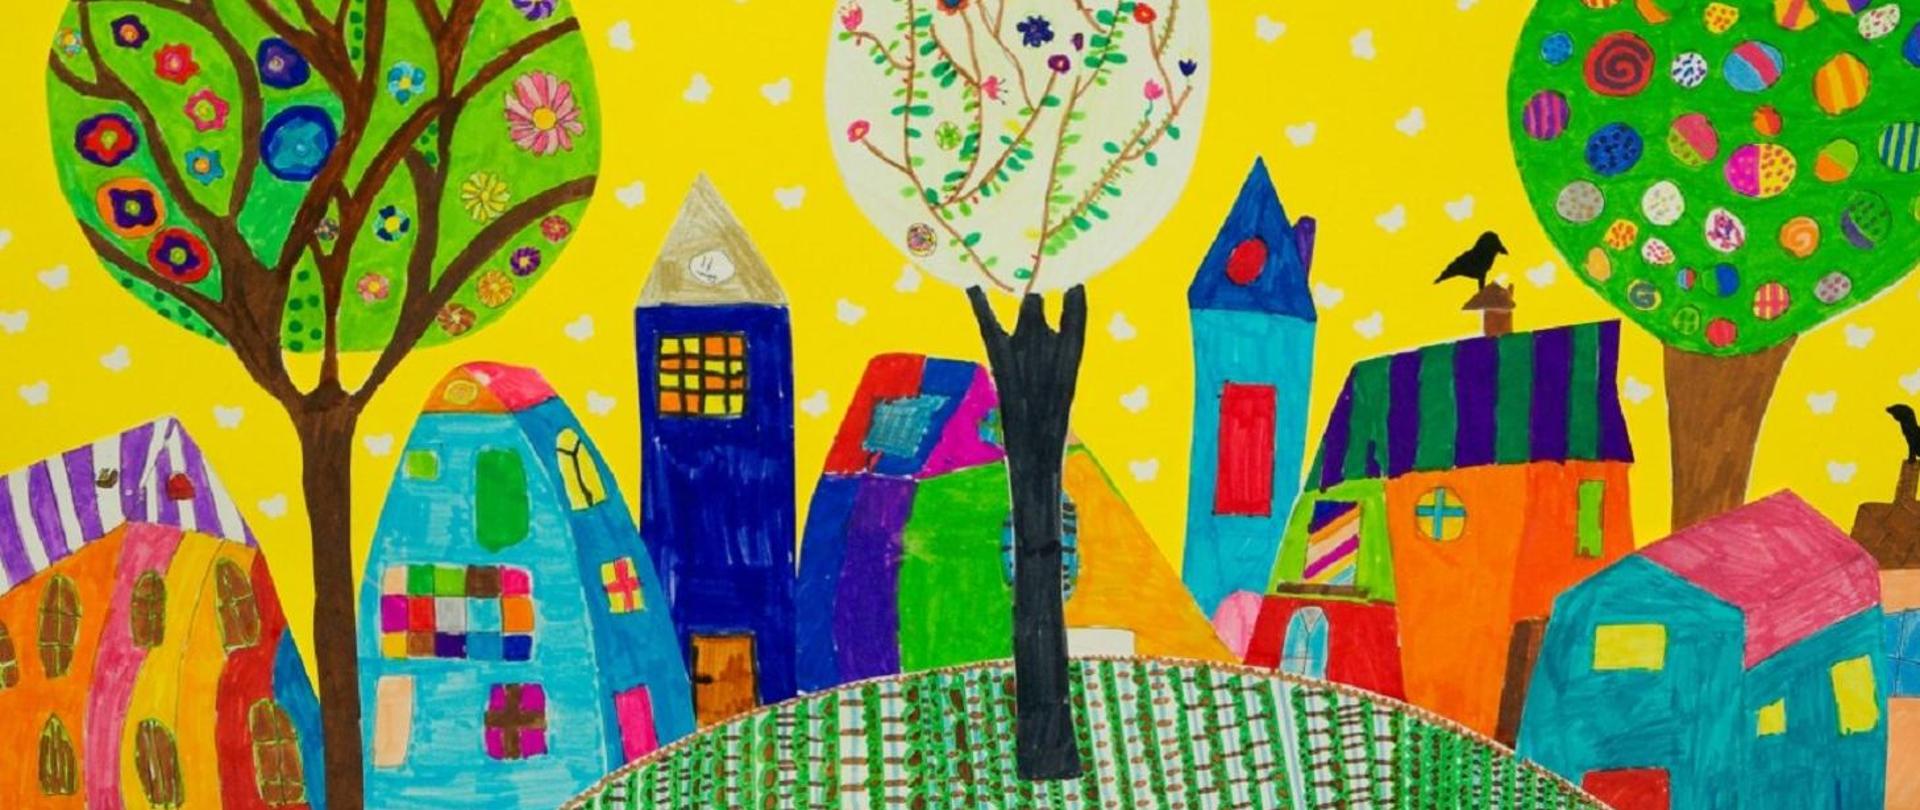 rysunek wykonany kredkami pokazuje kolorowe domy w oknami